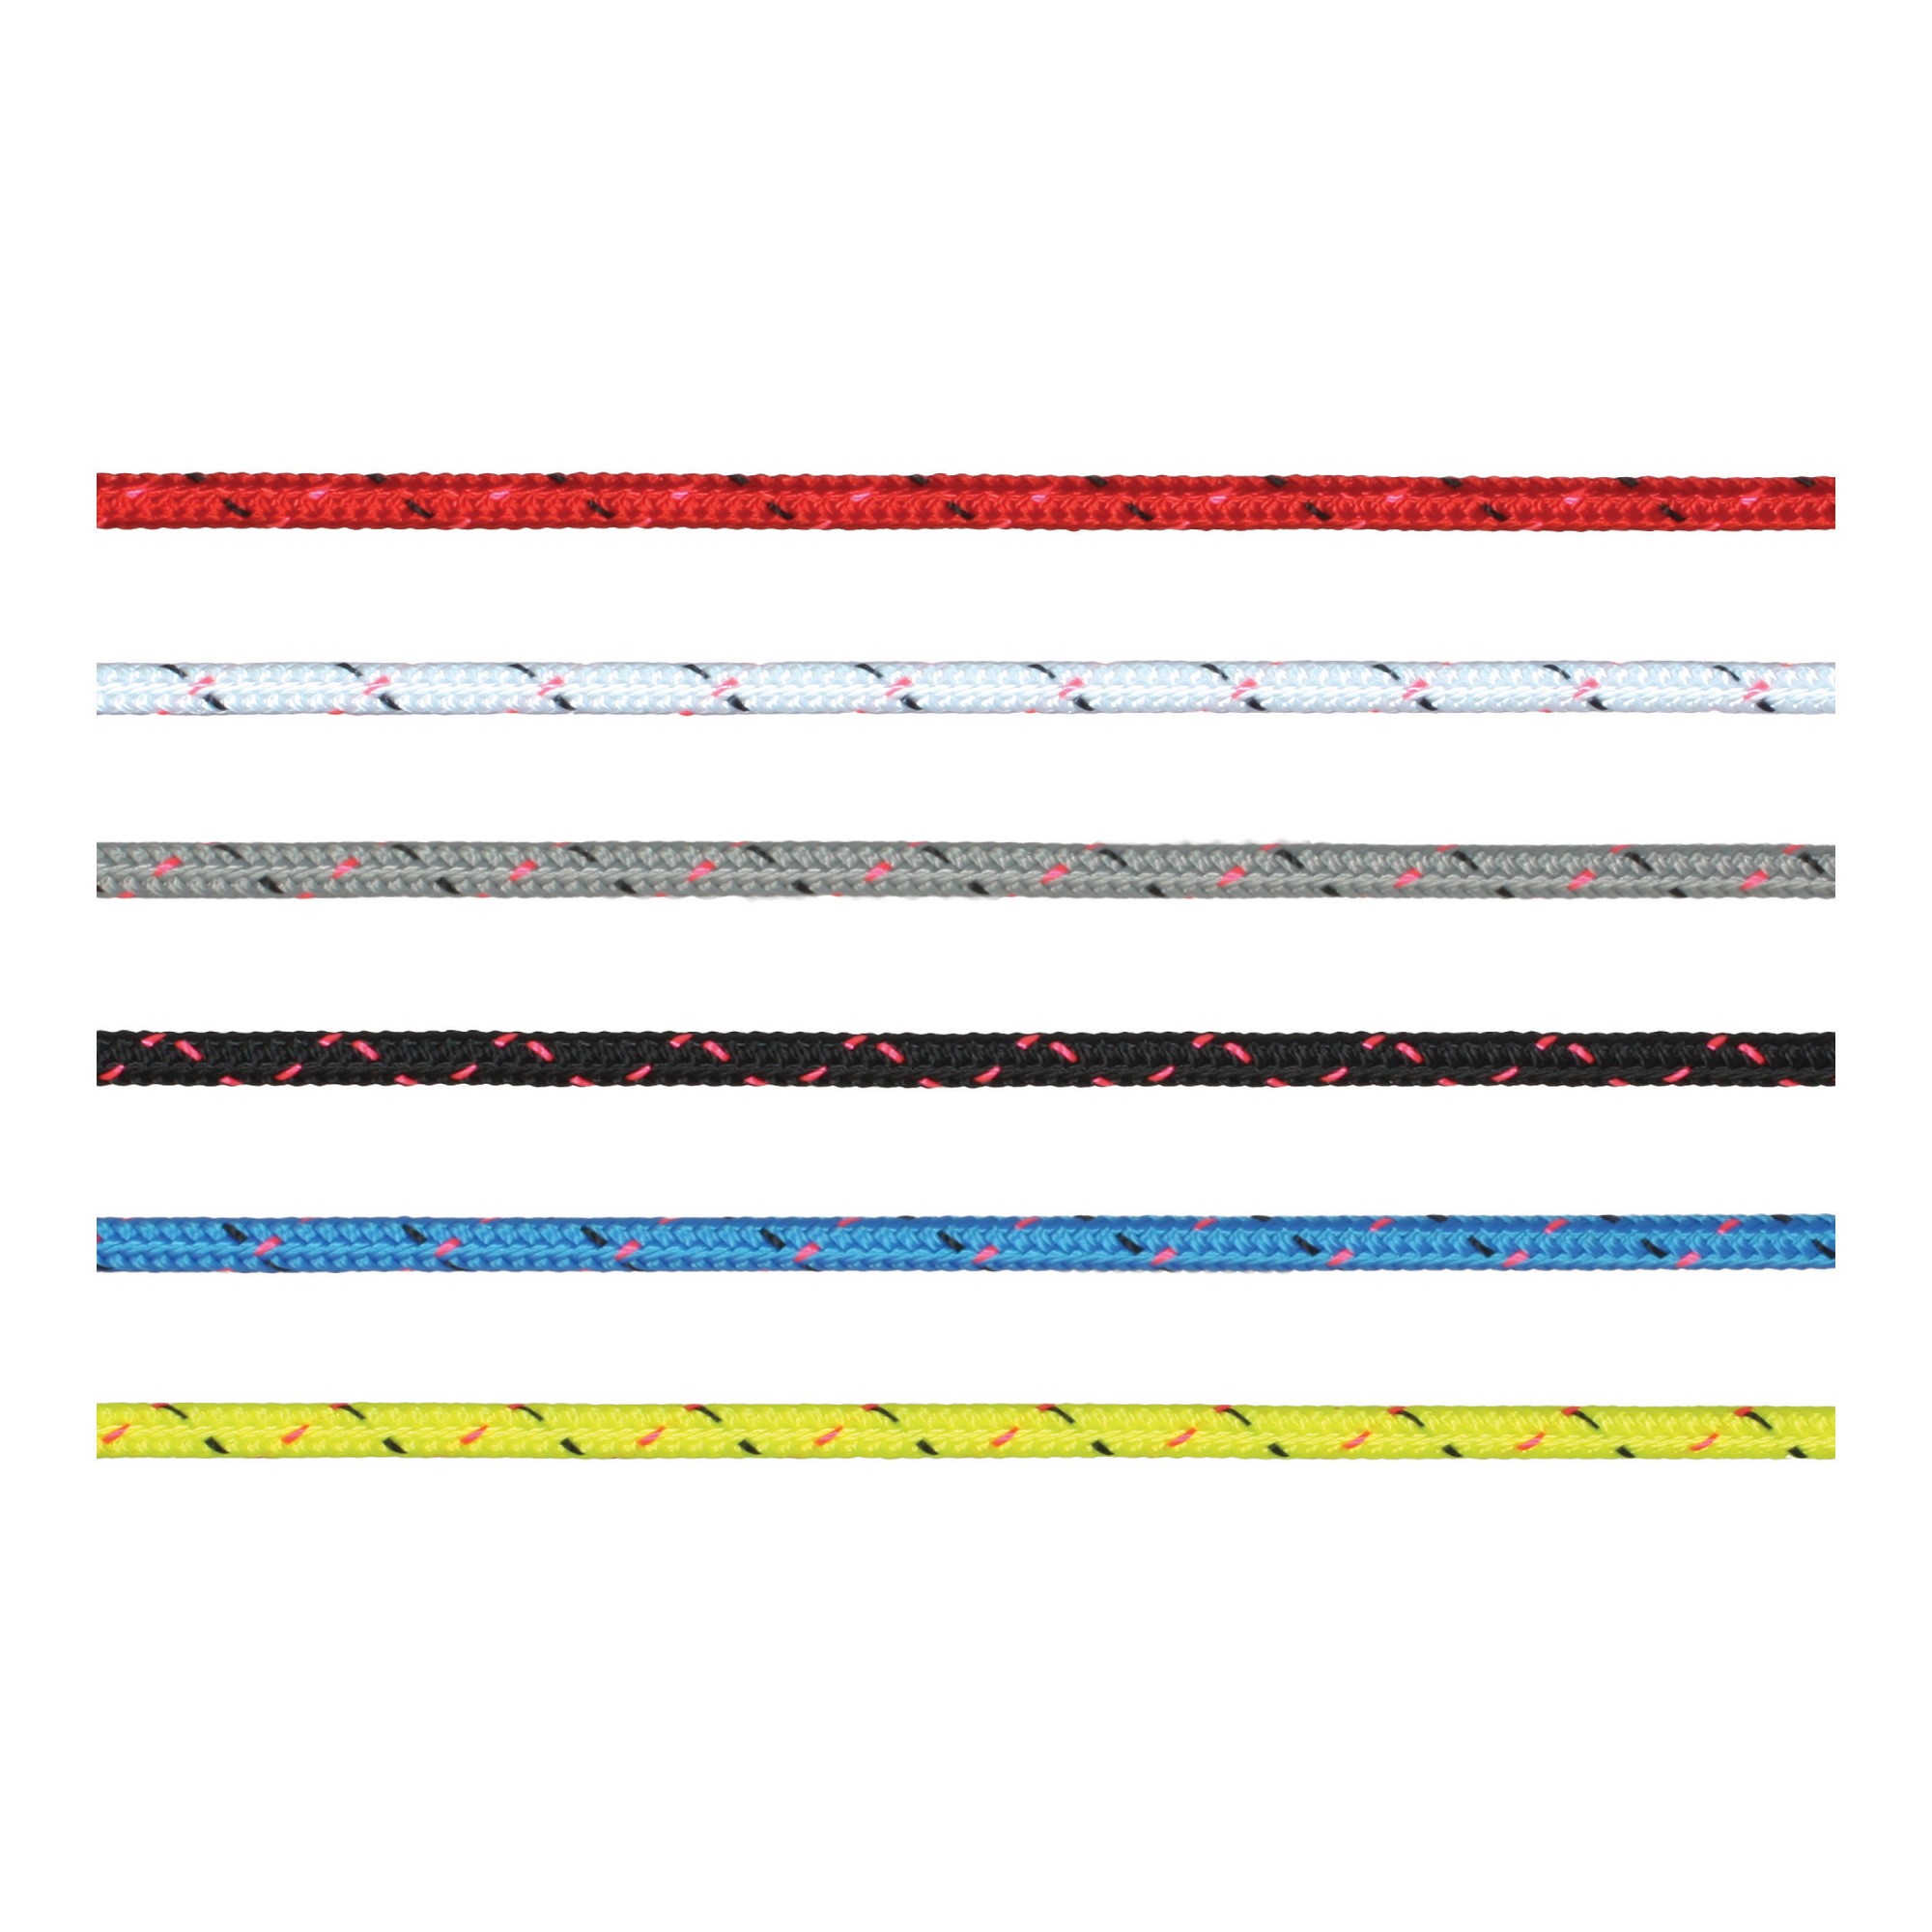 Трос Marlow Excel Pro из полиэстера фиолетового цвета 200 м диаметр 8 мм, Osculati 06.465.08VI